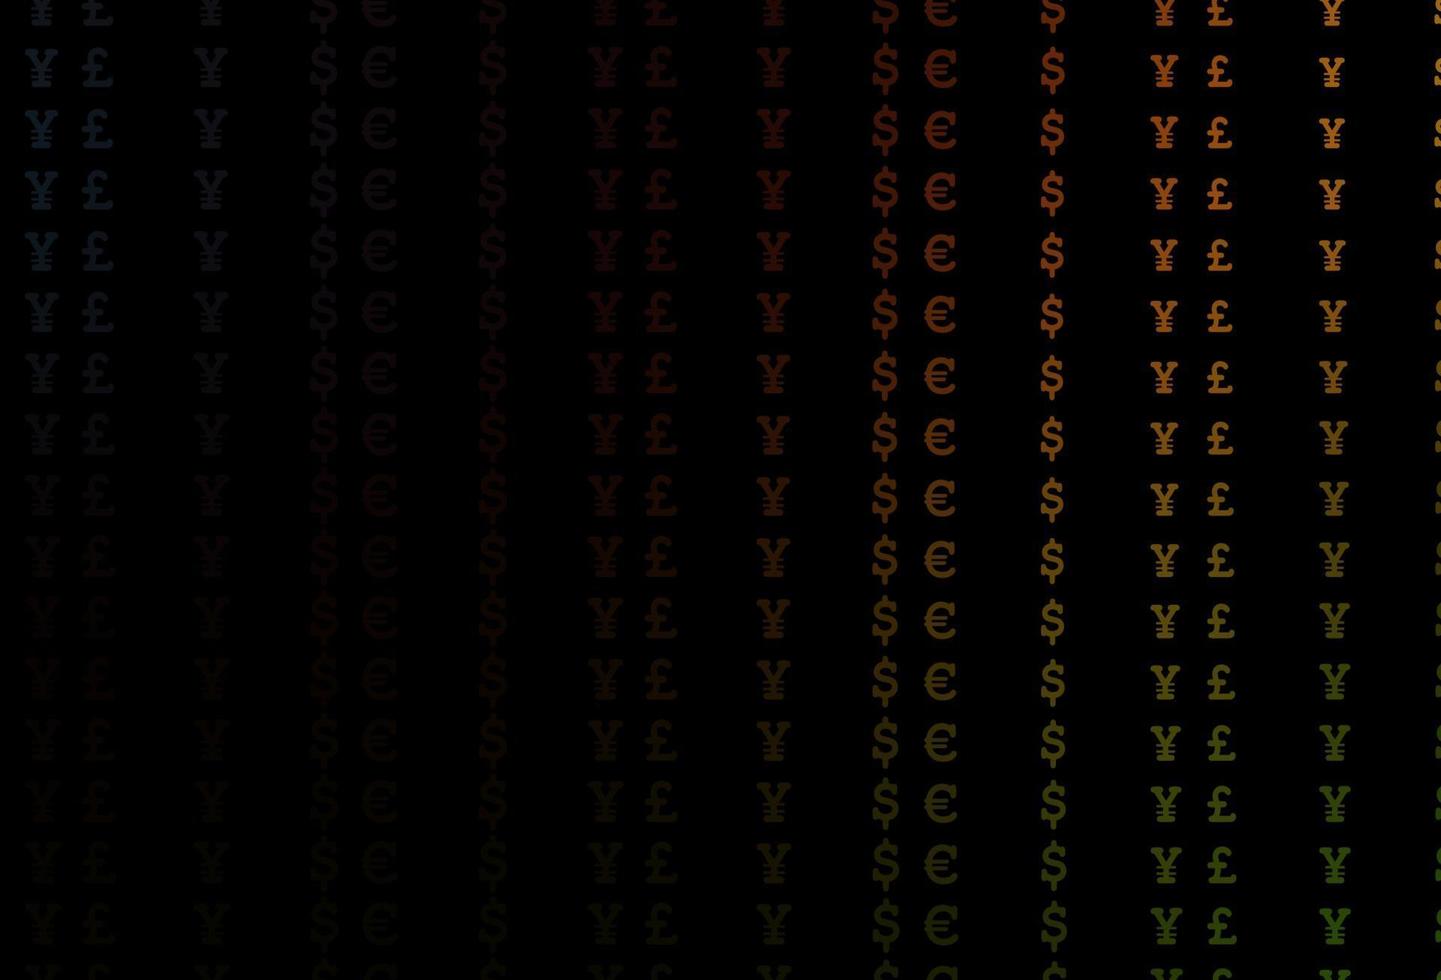 textura de vetor verde e vermelho escuro com símbolos financeiros.